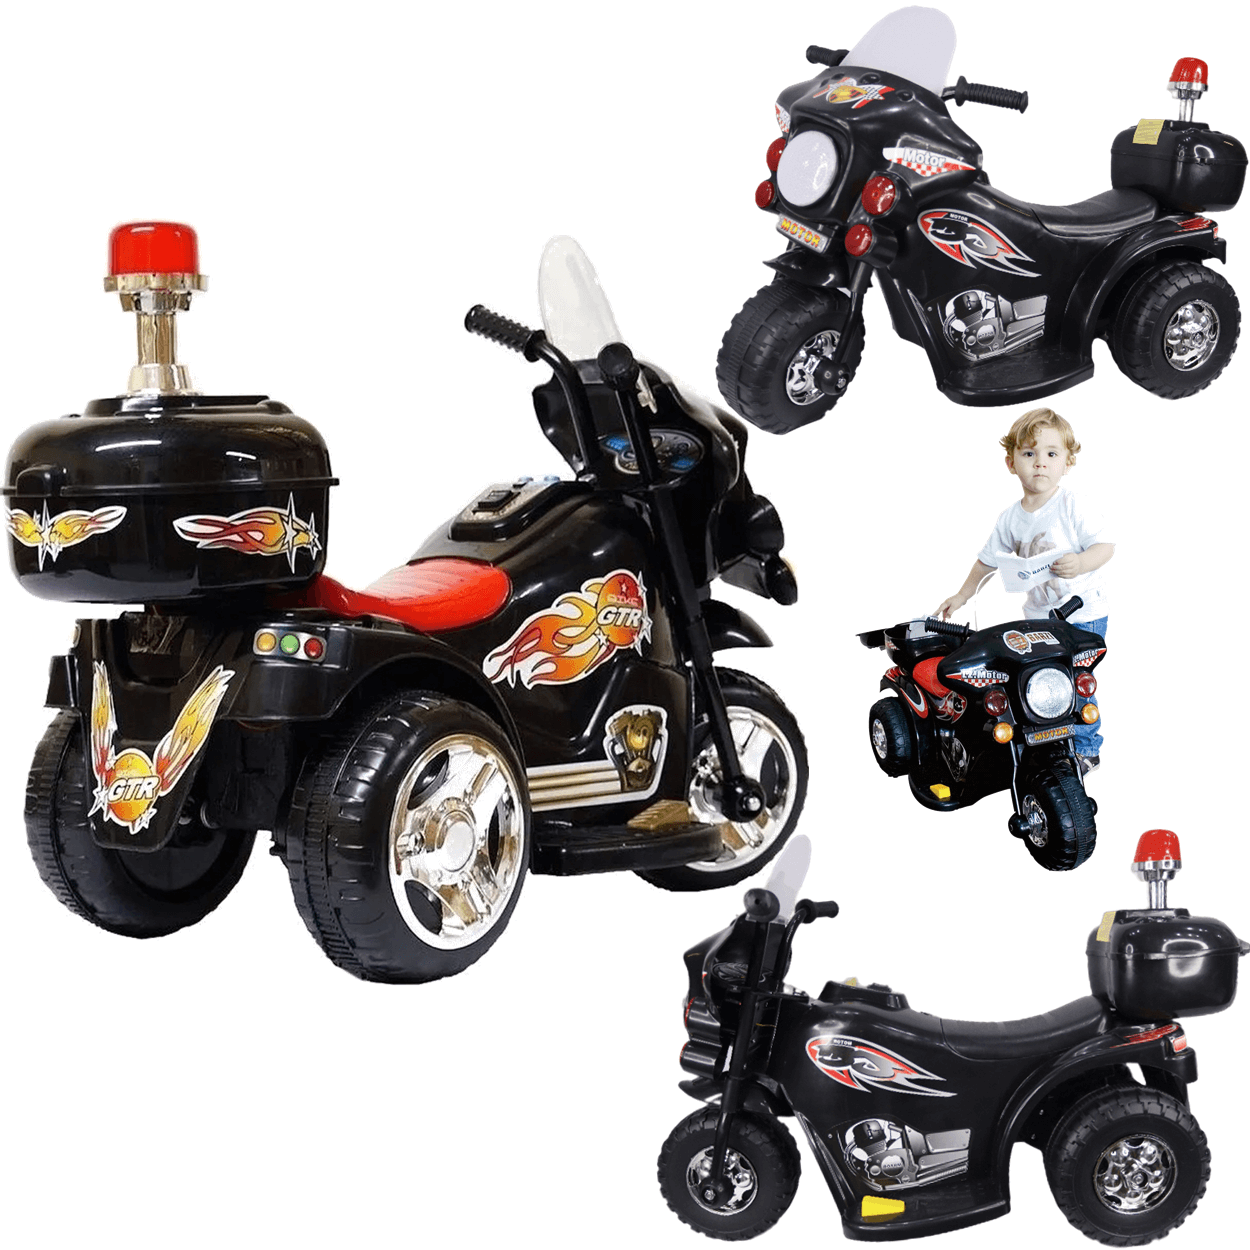 Moto Eletrica Infantil Policia Shiny Toys Motorcycle 6v Preta - 2